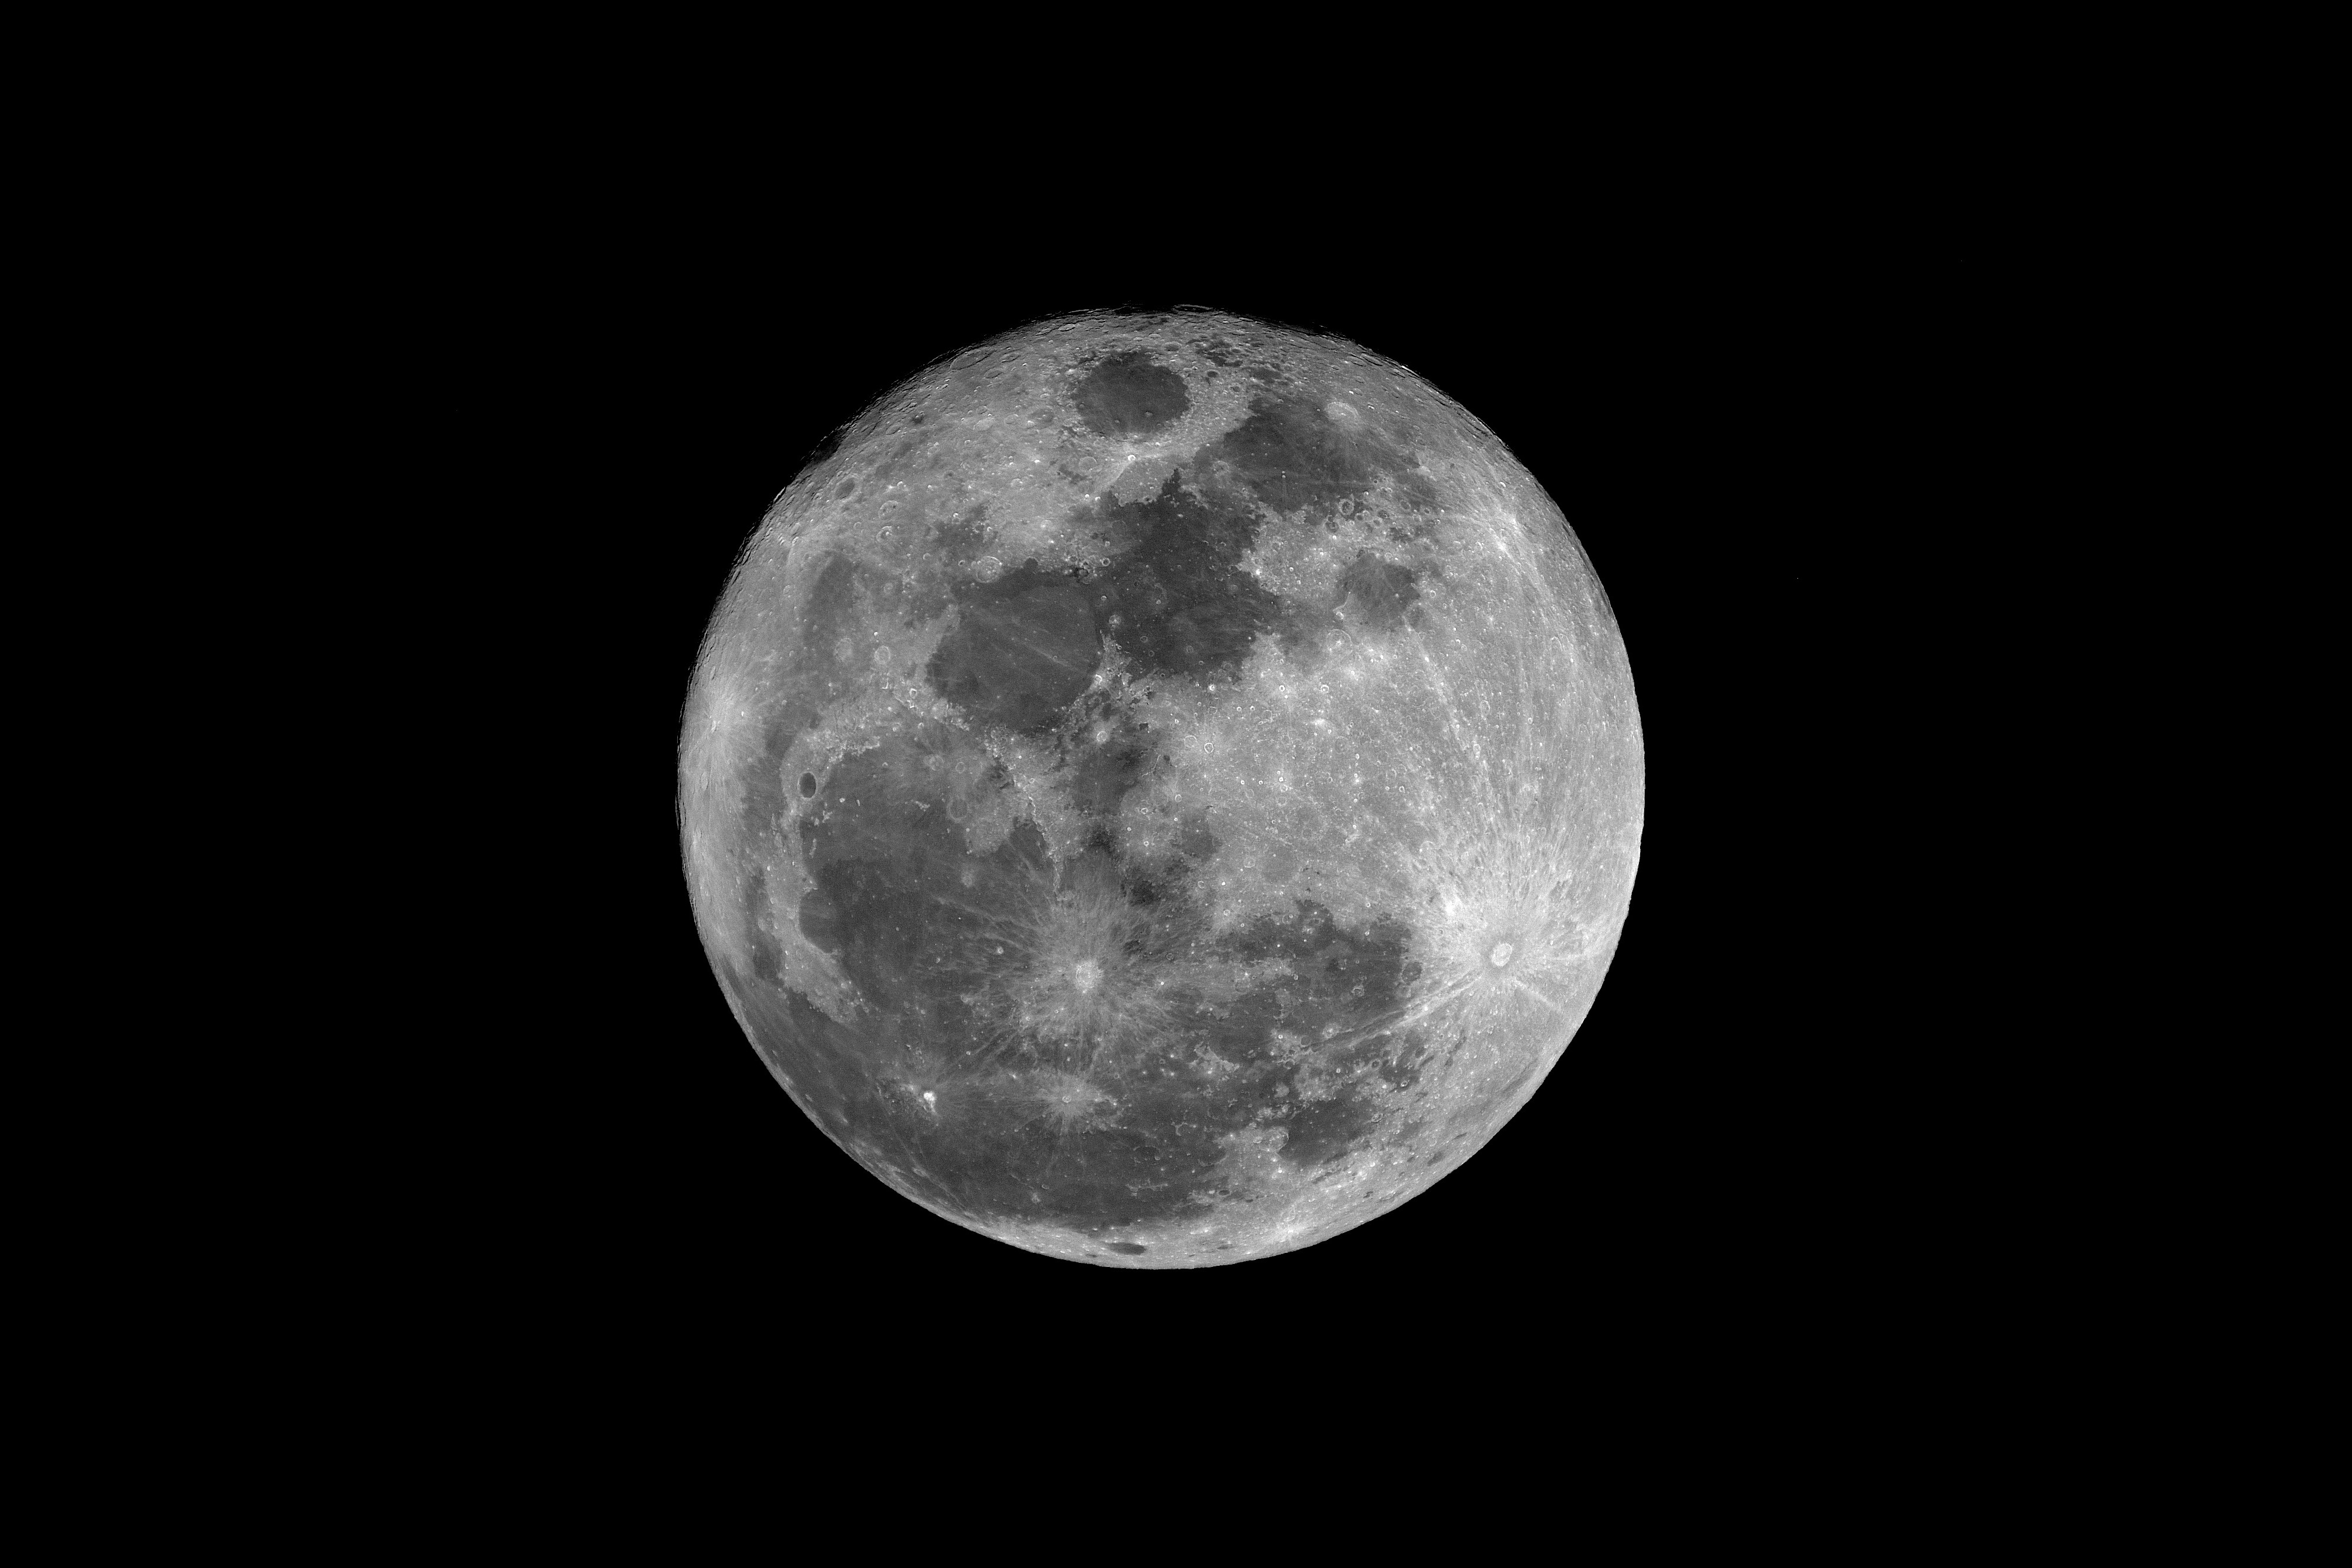 moon_sharp1_um.jpg (1,022,045 bytes)